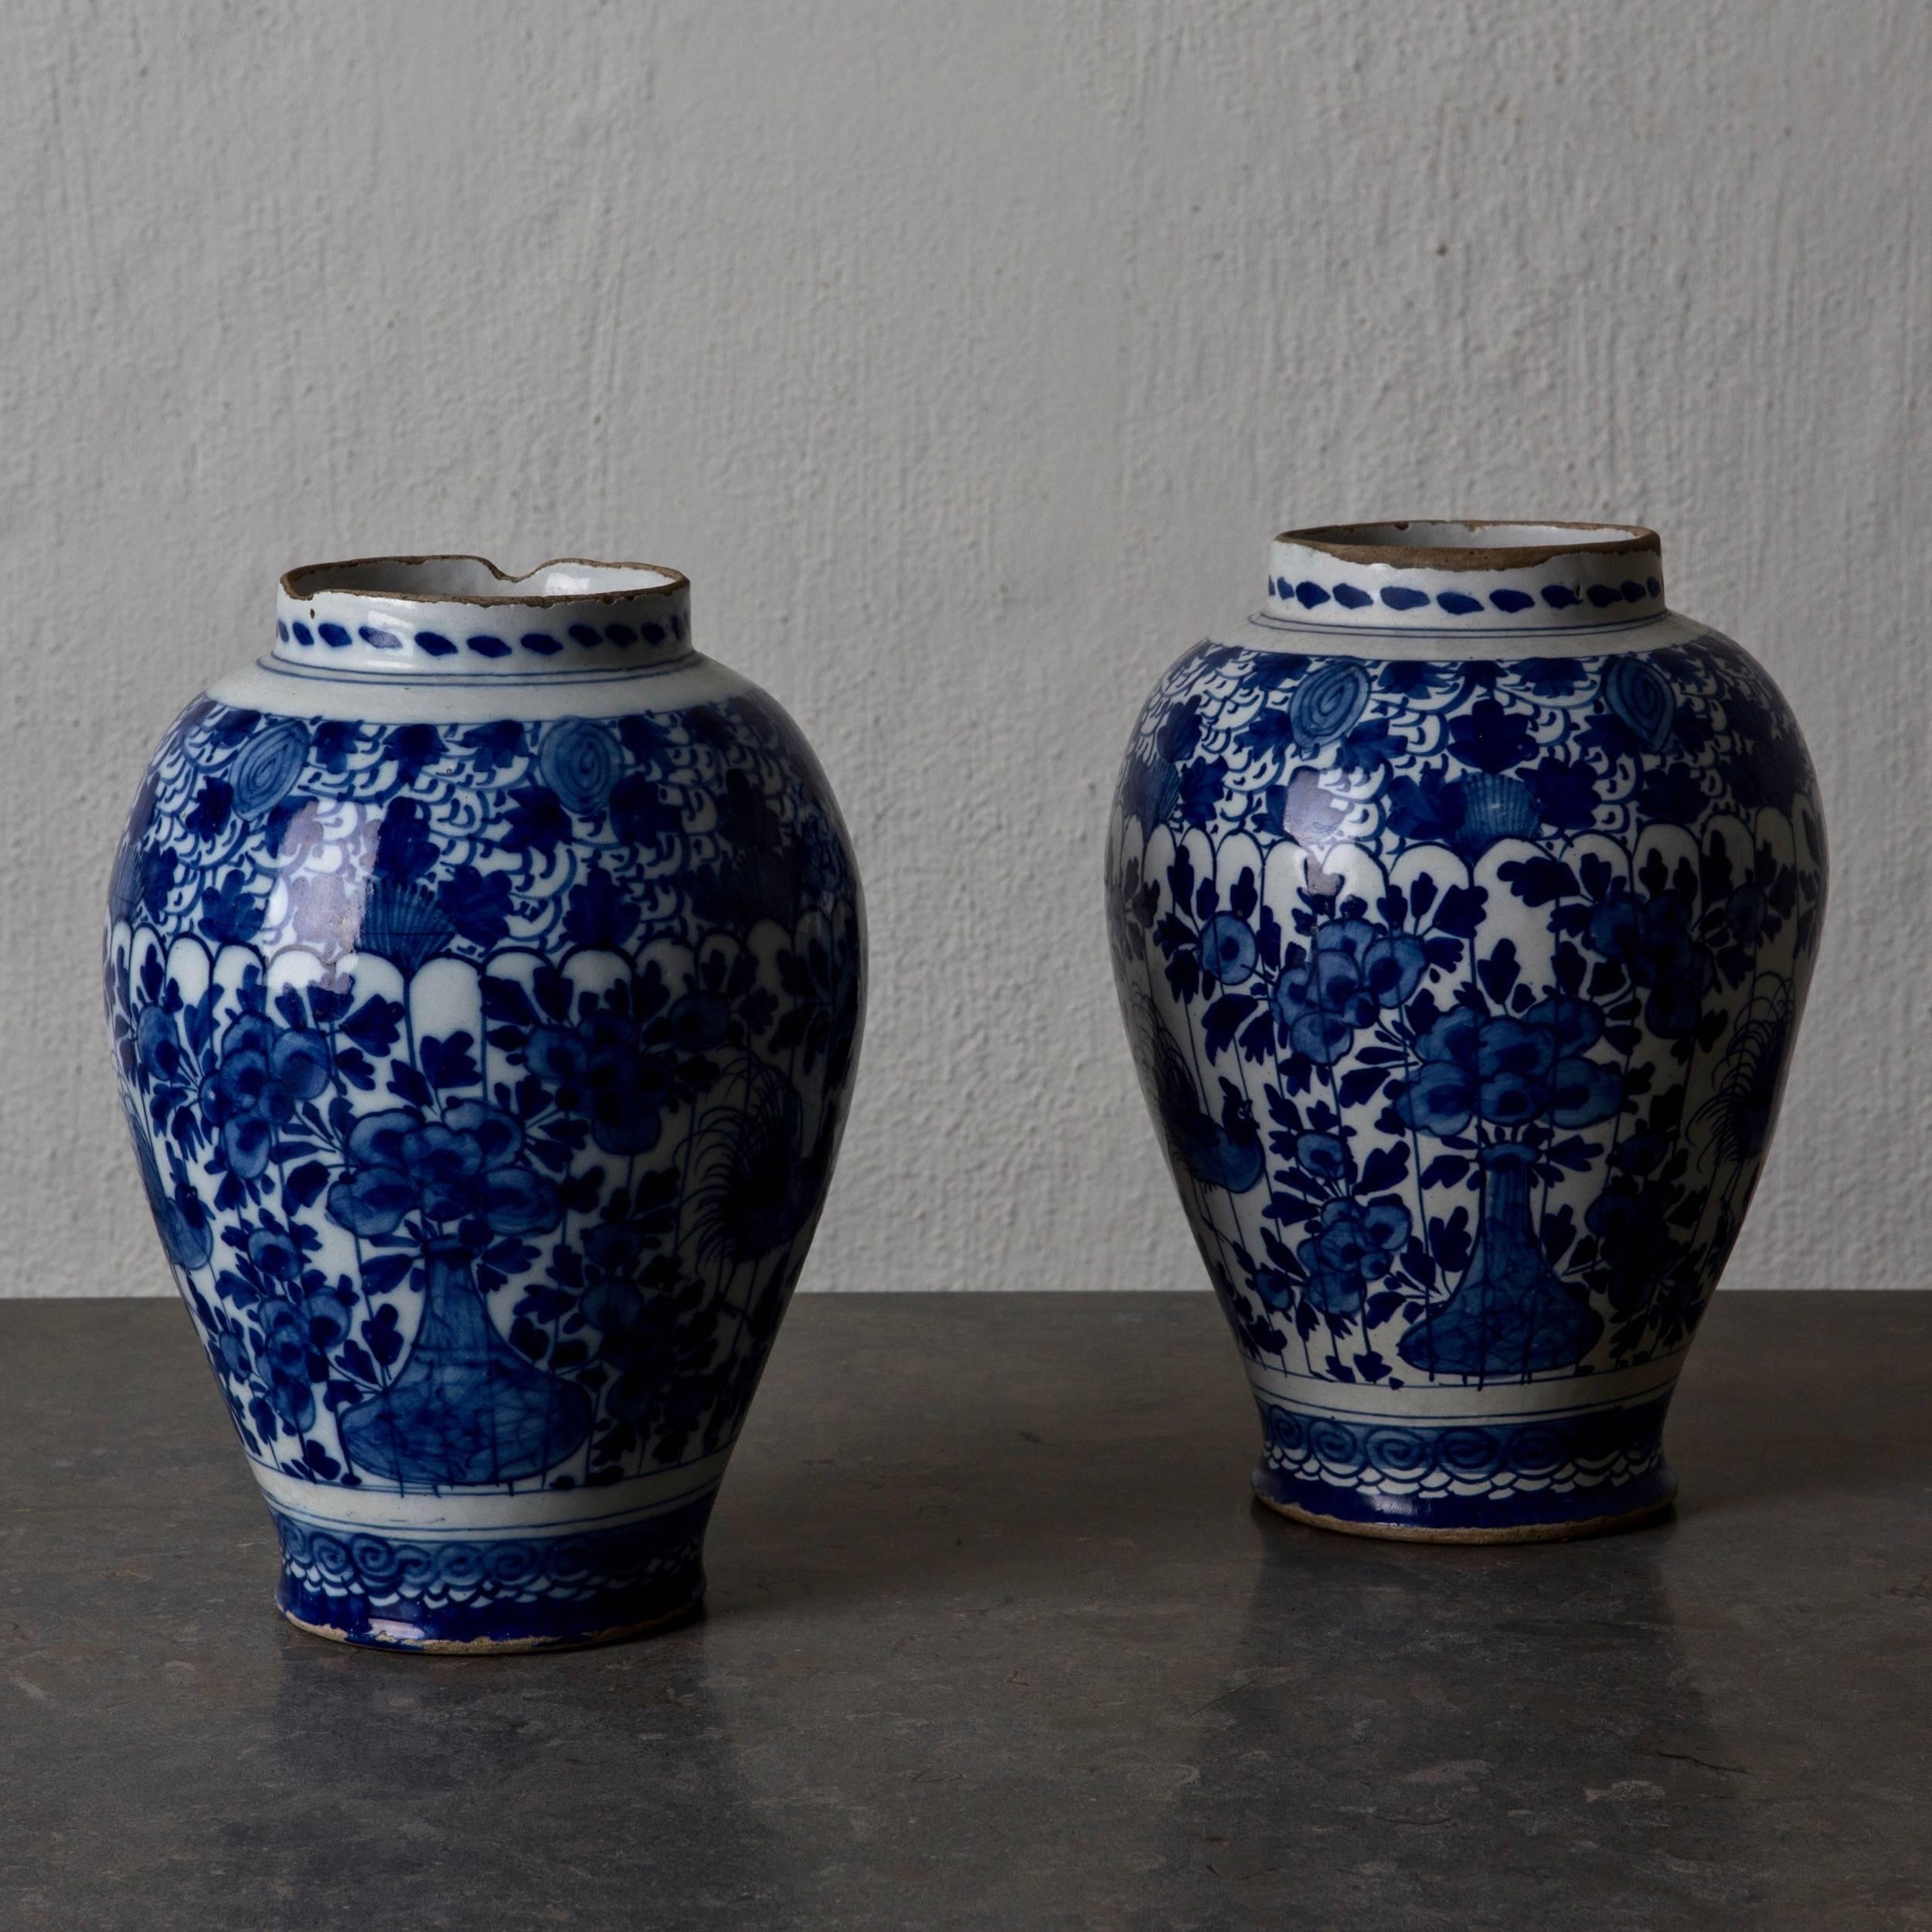 Urnen Paar Delft blau und weiß 18. Jahrhundert, Holland. Ein Paar wunderschöner Urnen, die im 18. Jahrhundert in Delft, Holland, hergestellt wurden. Glasierte Töpferware in Blau und Weiß.